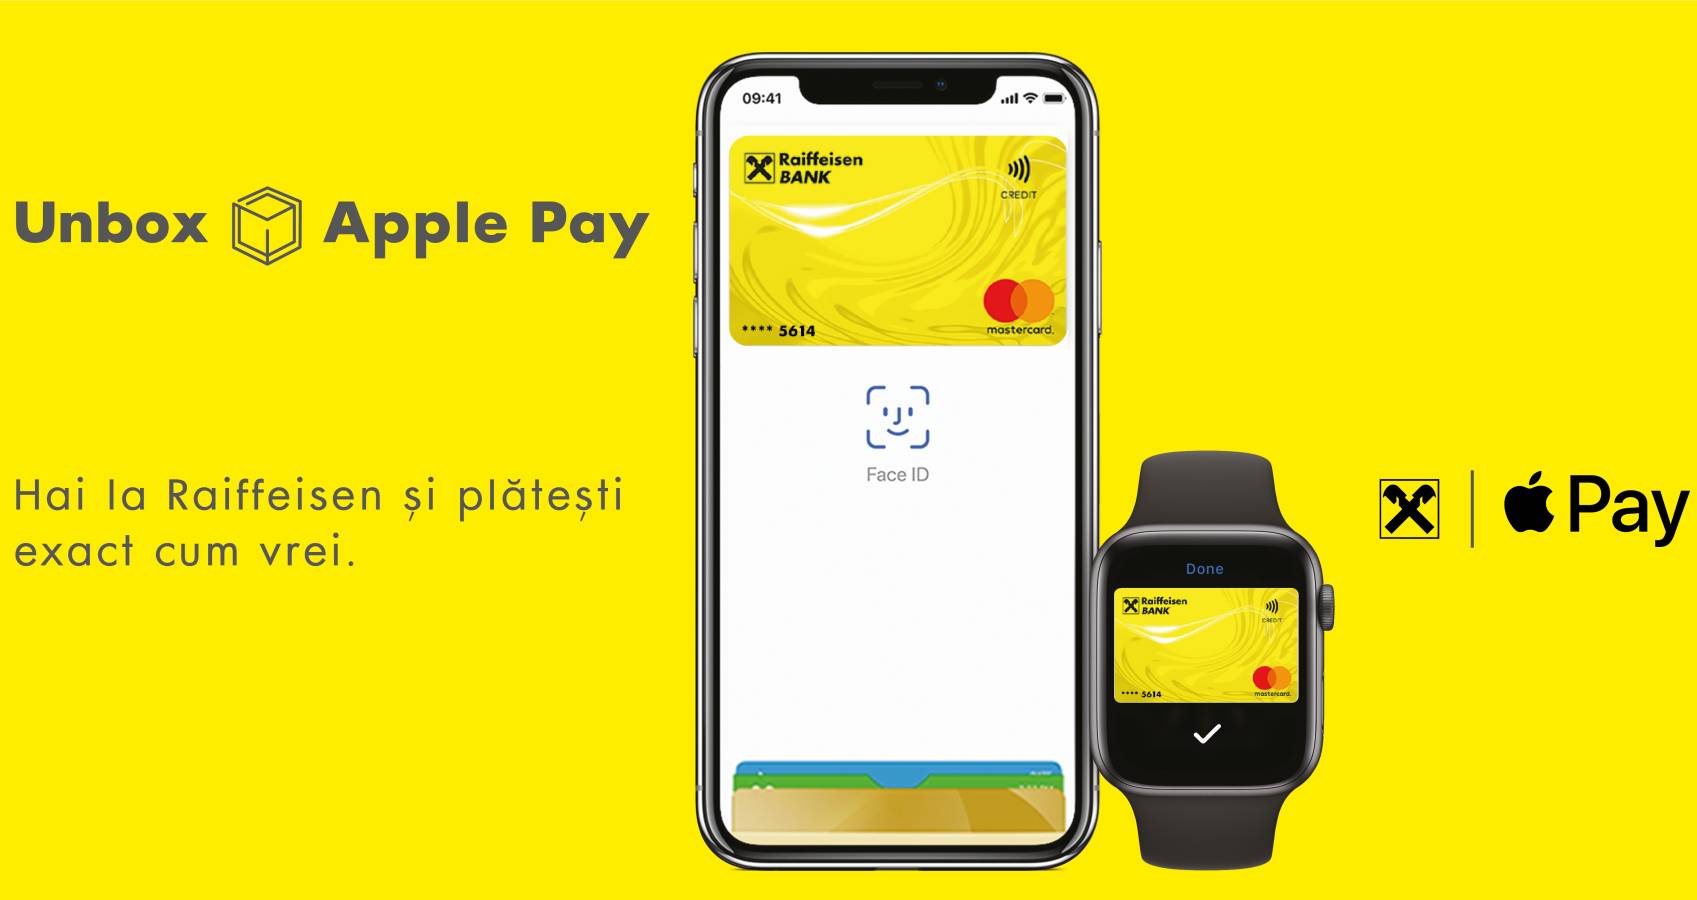 Raiffeisen Bank Apple Pay Rumænien